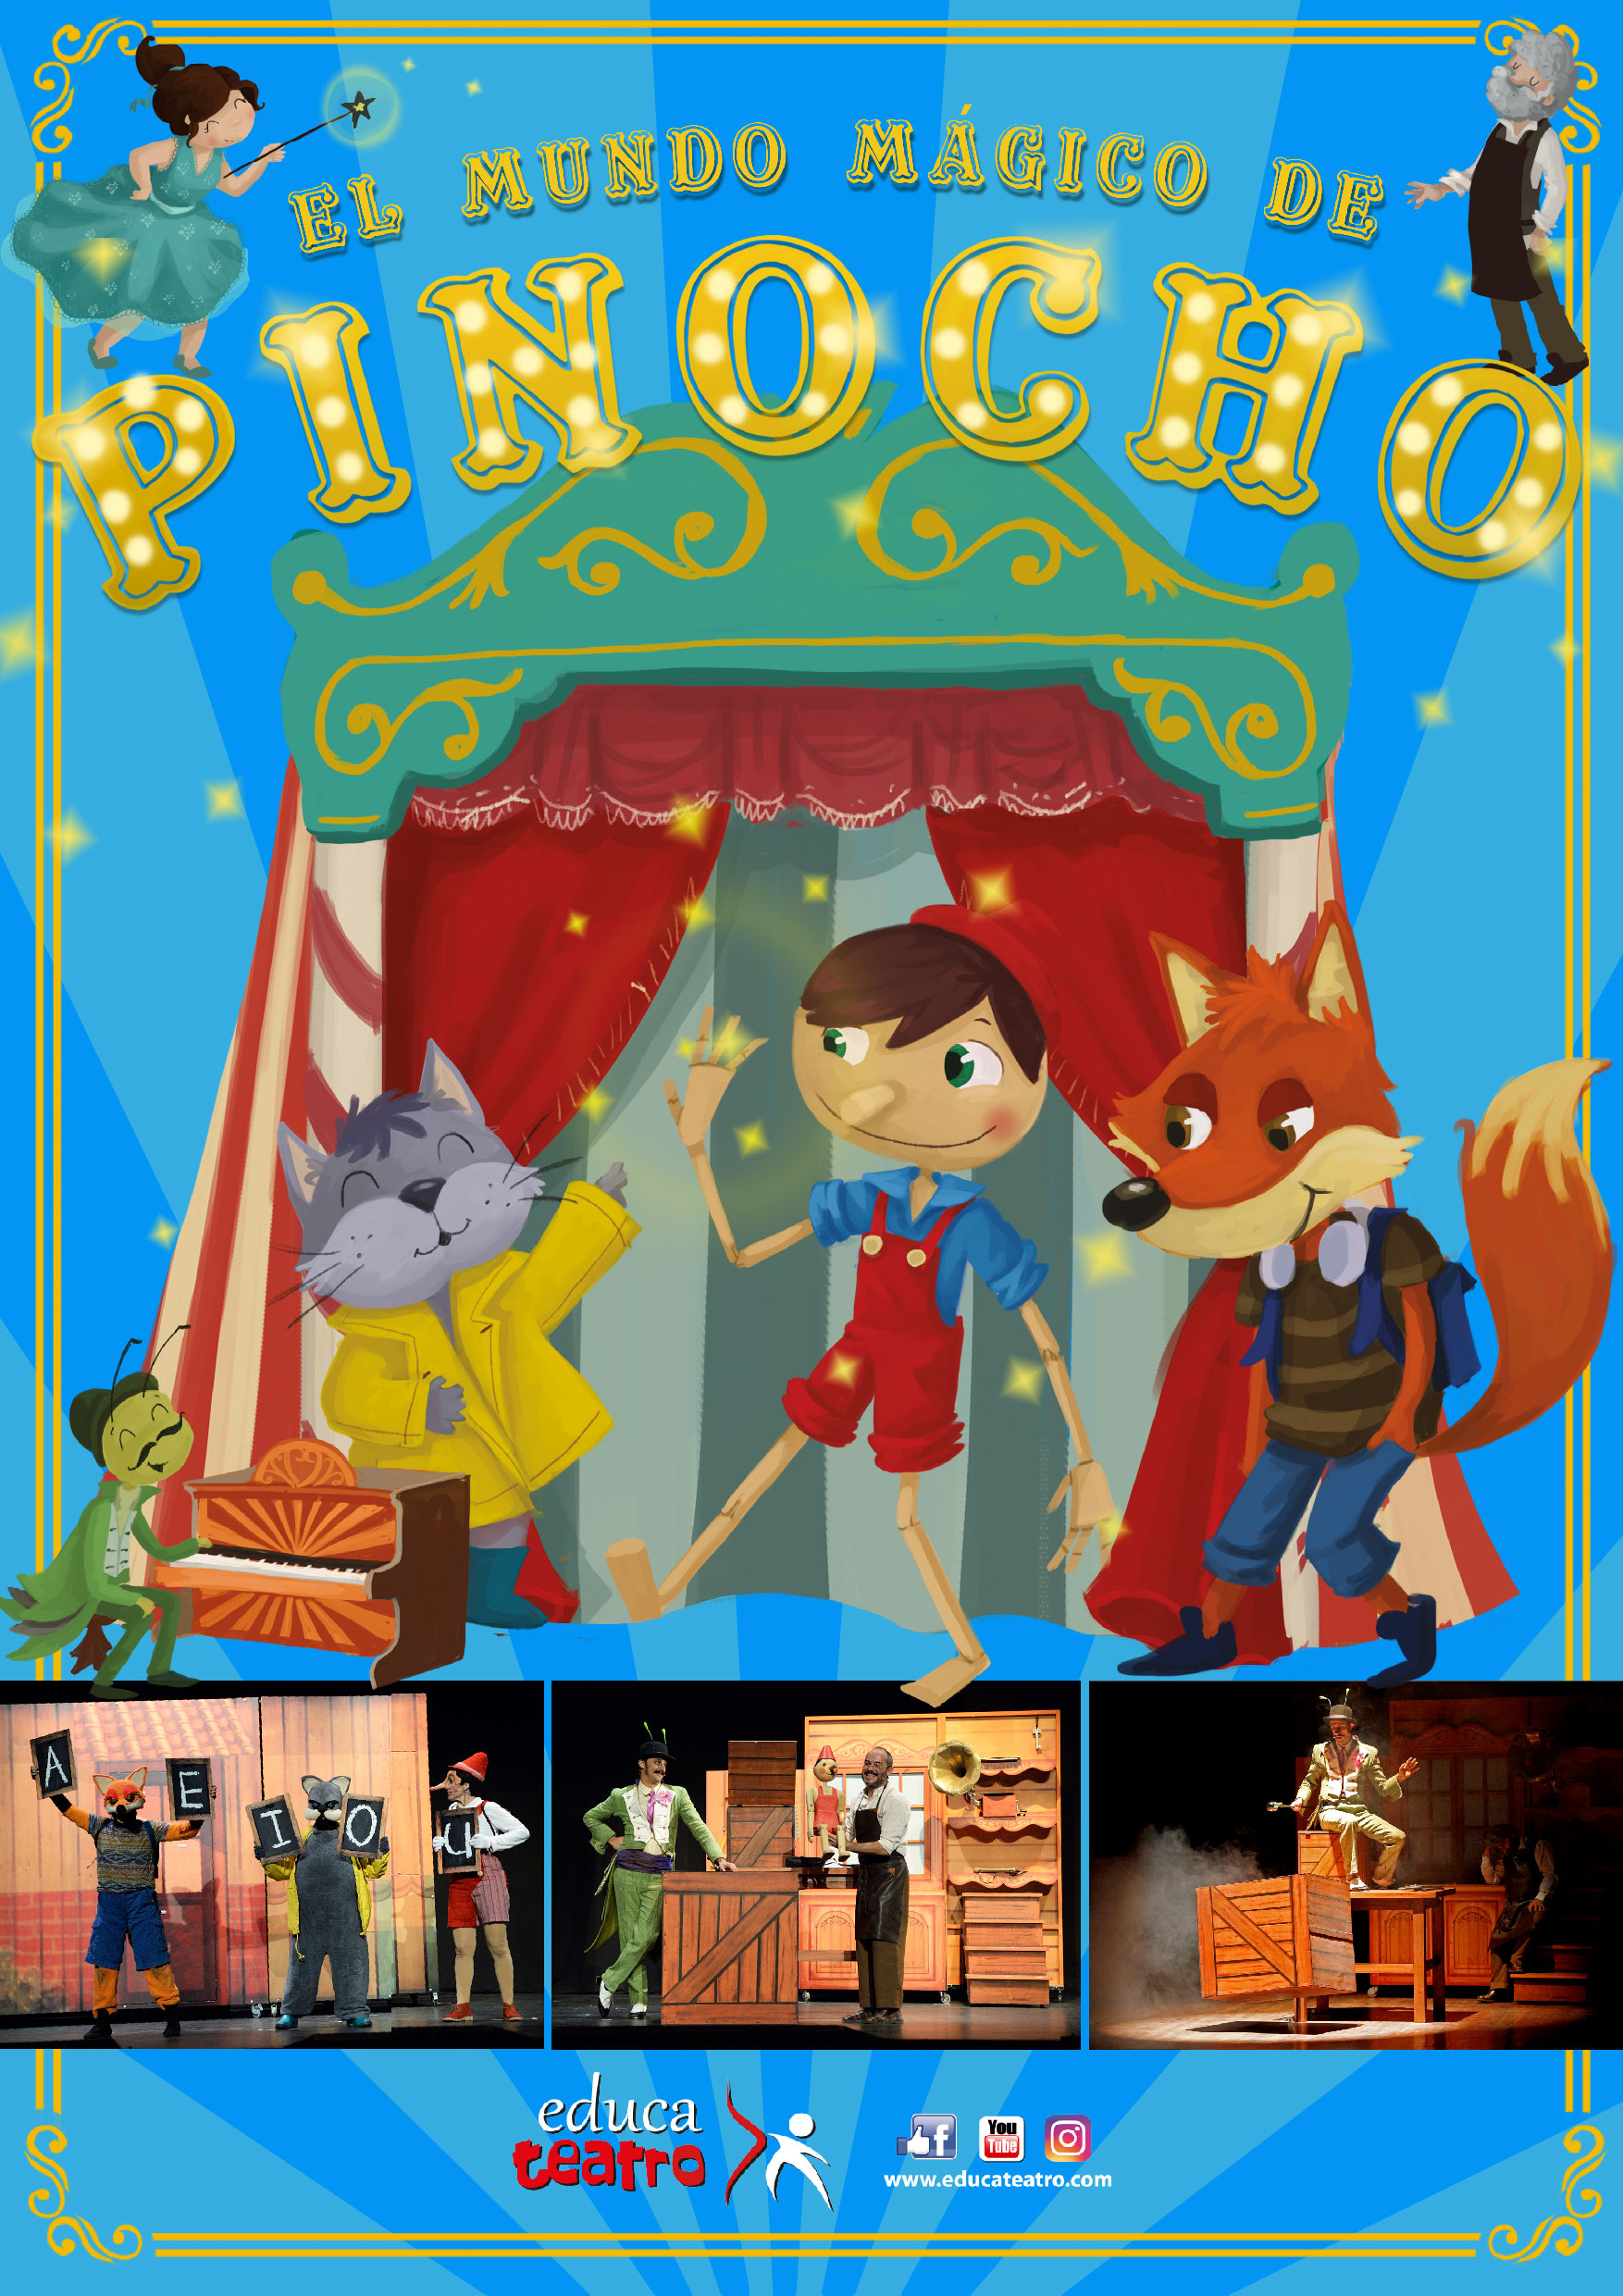 El mundo mágico de Pinocho